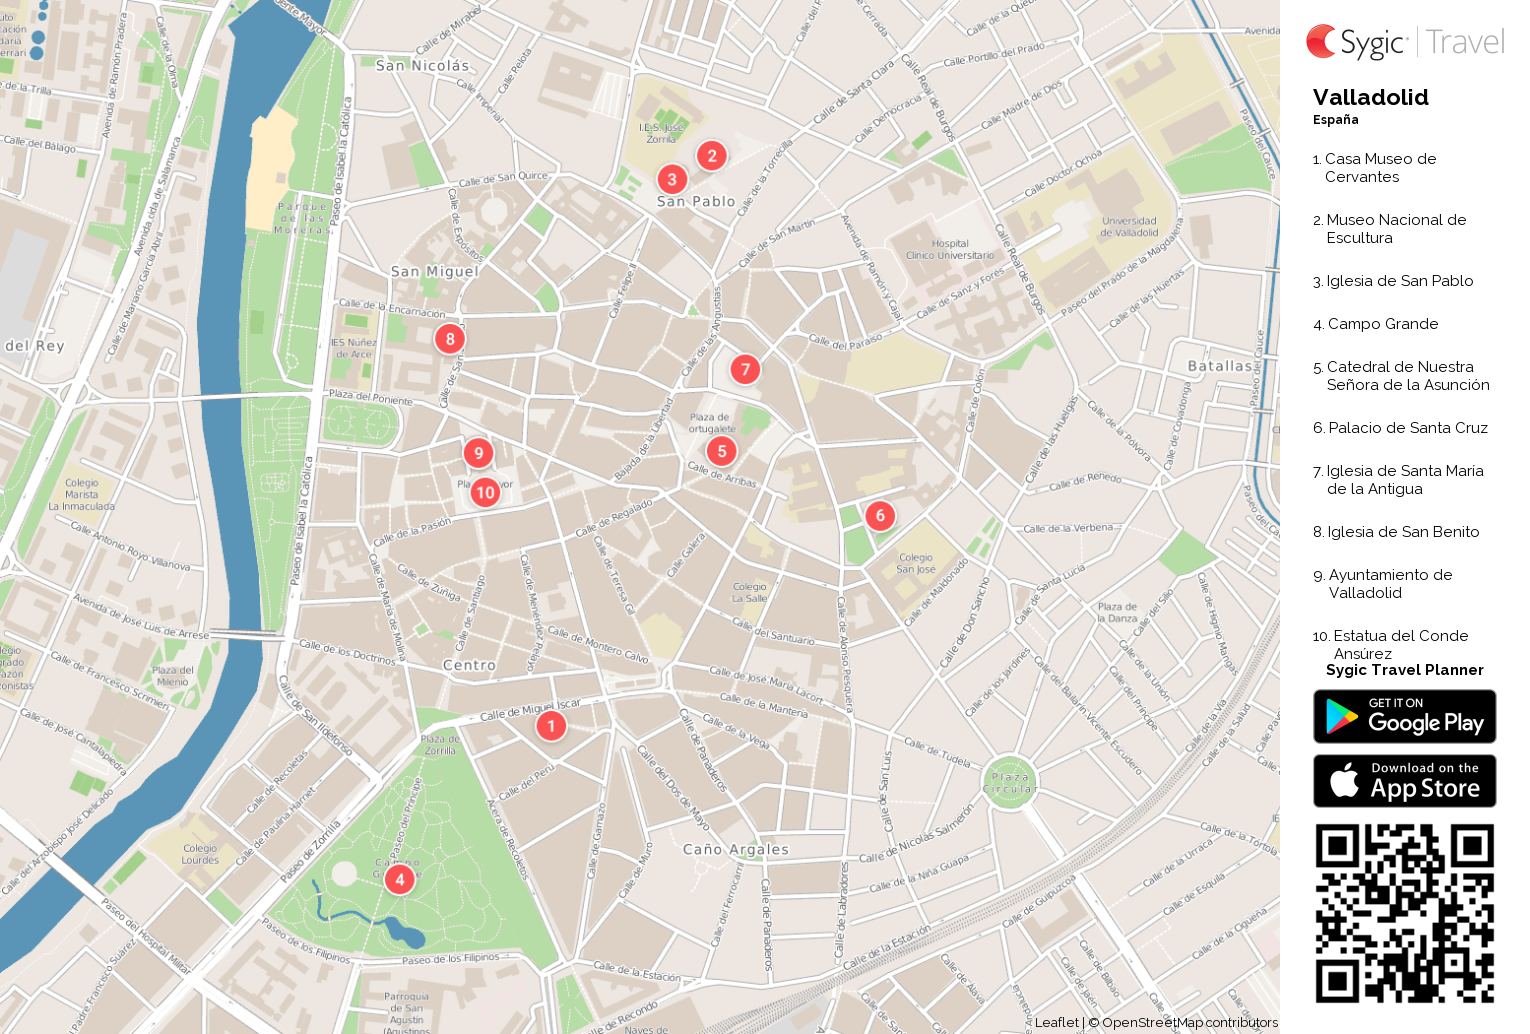 Descubre los secretos del Mapa de Valladolid